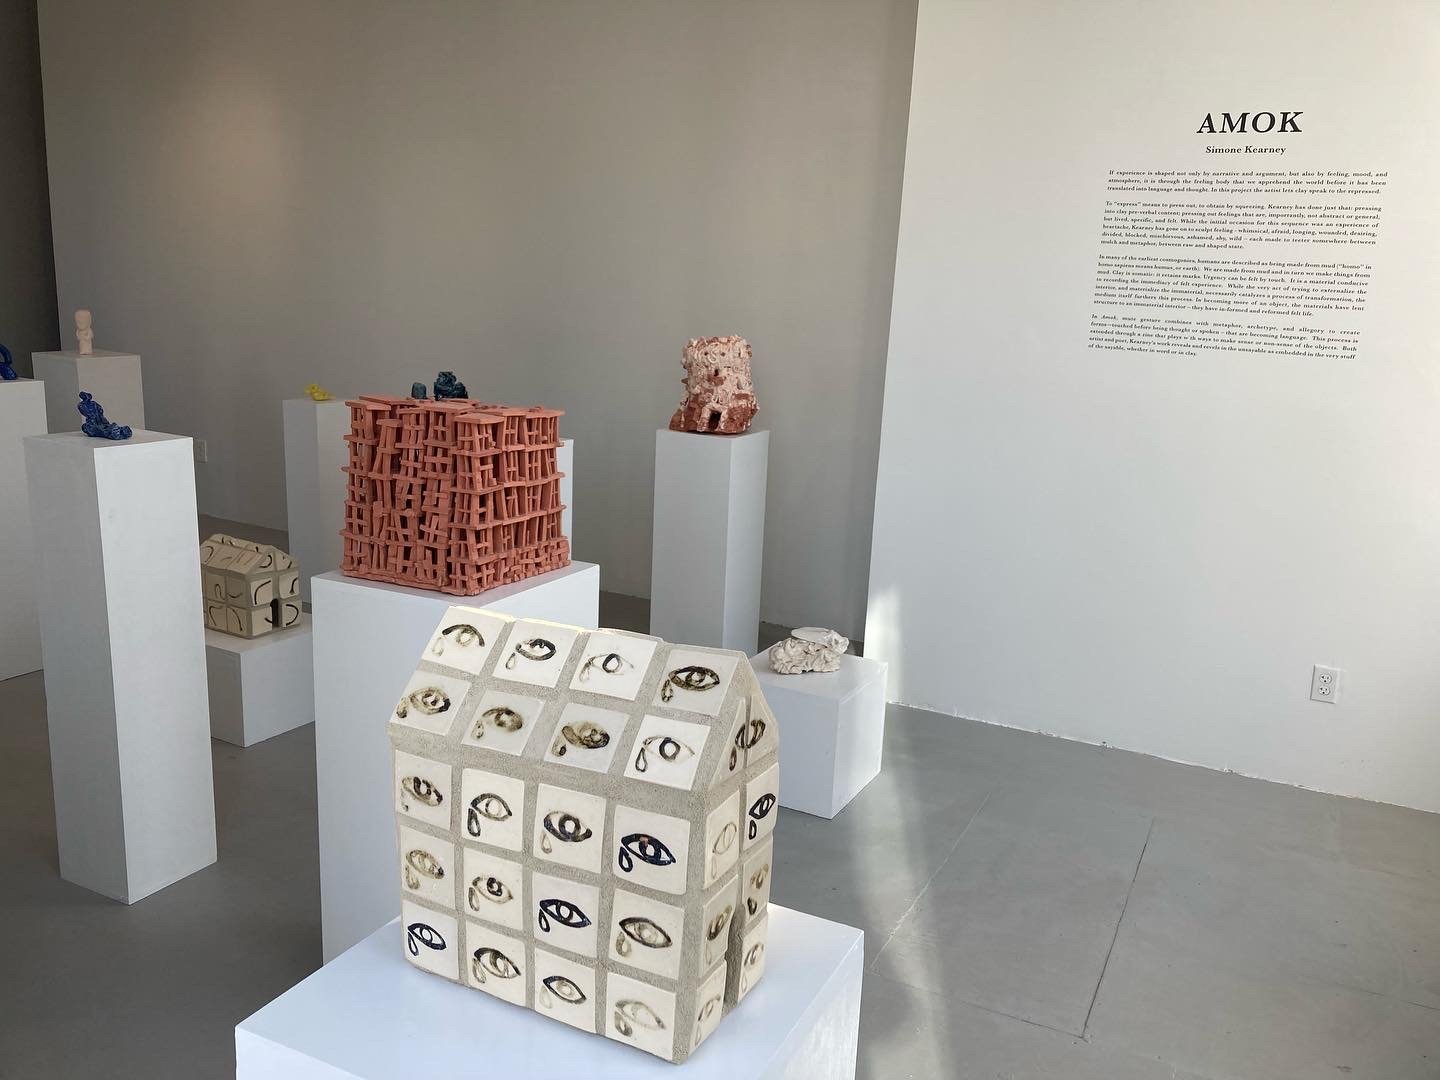  “Amok”, Artshack Gallery,  press release  